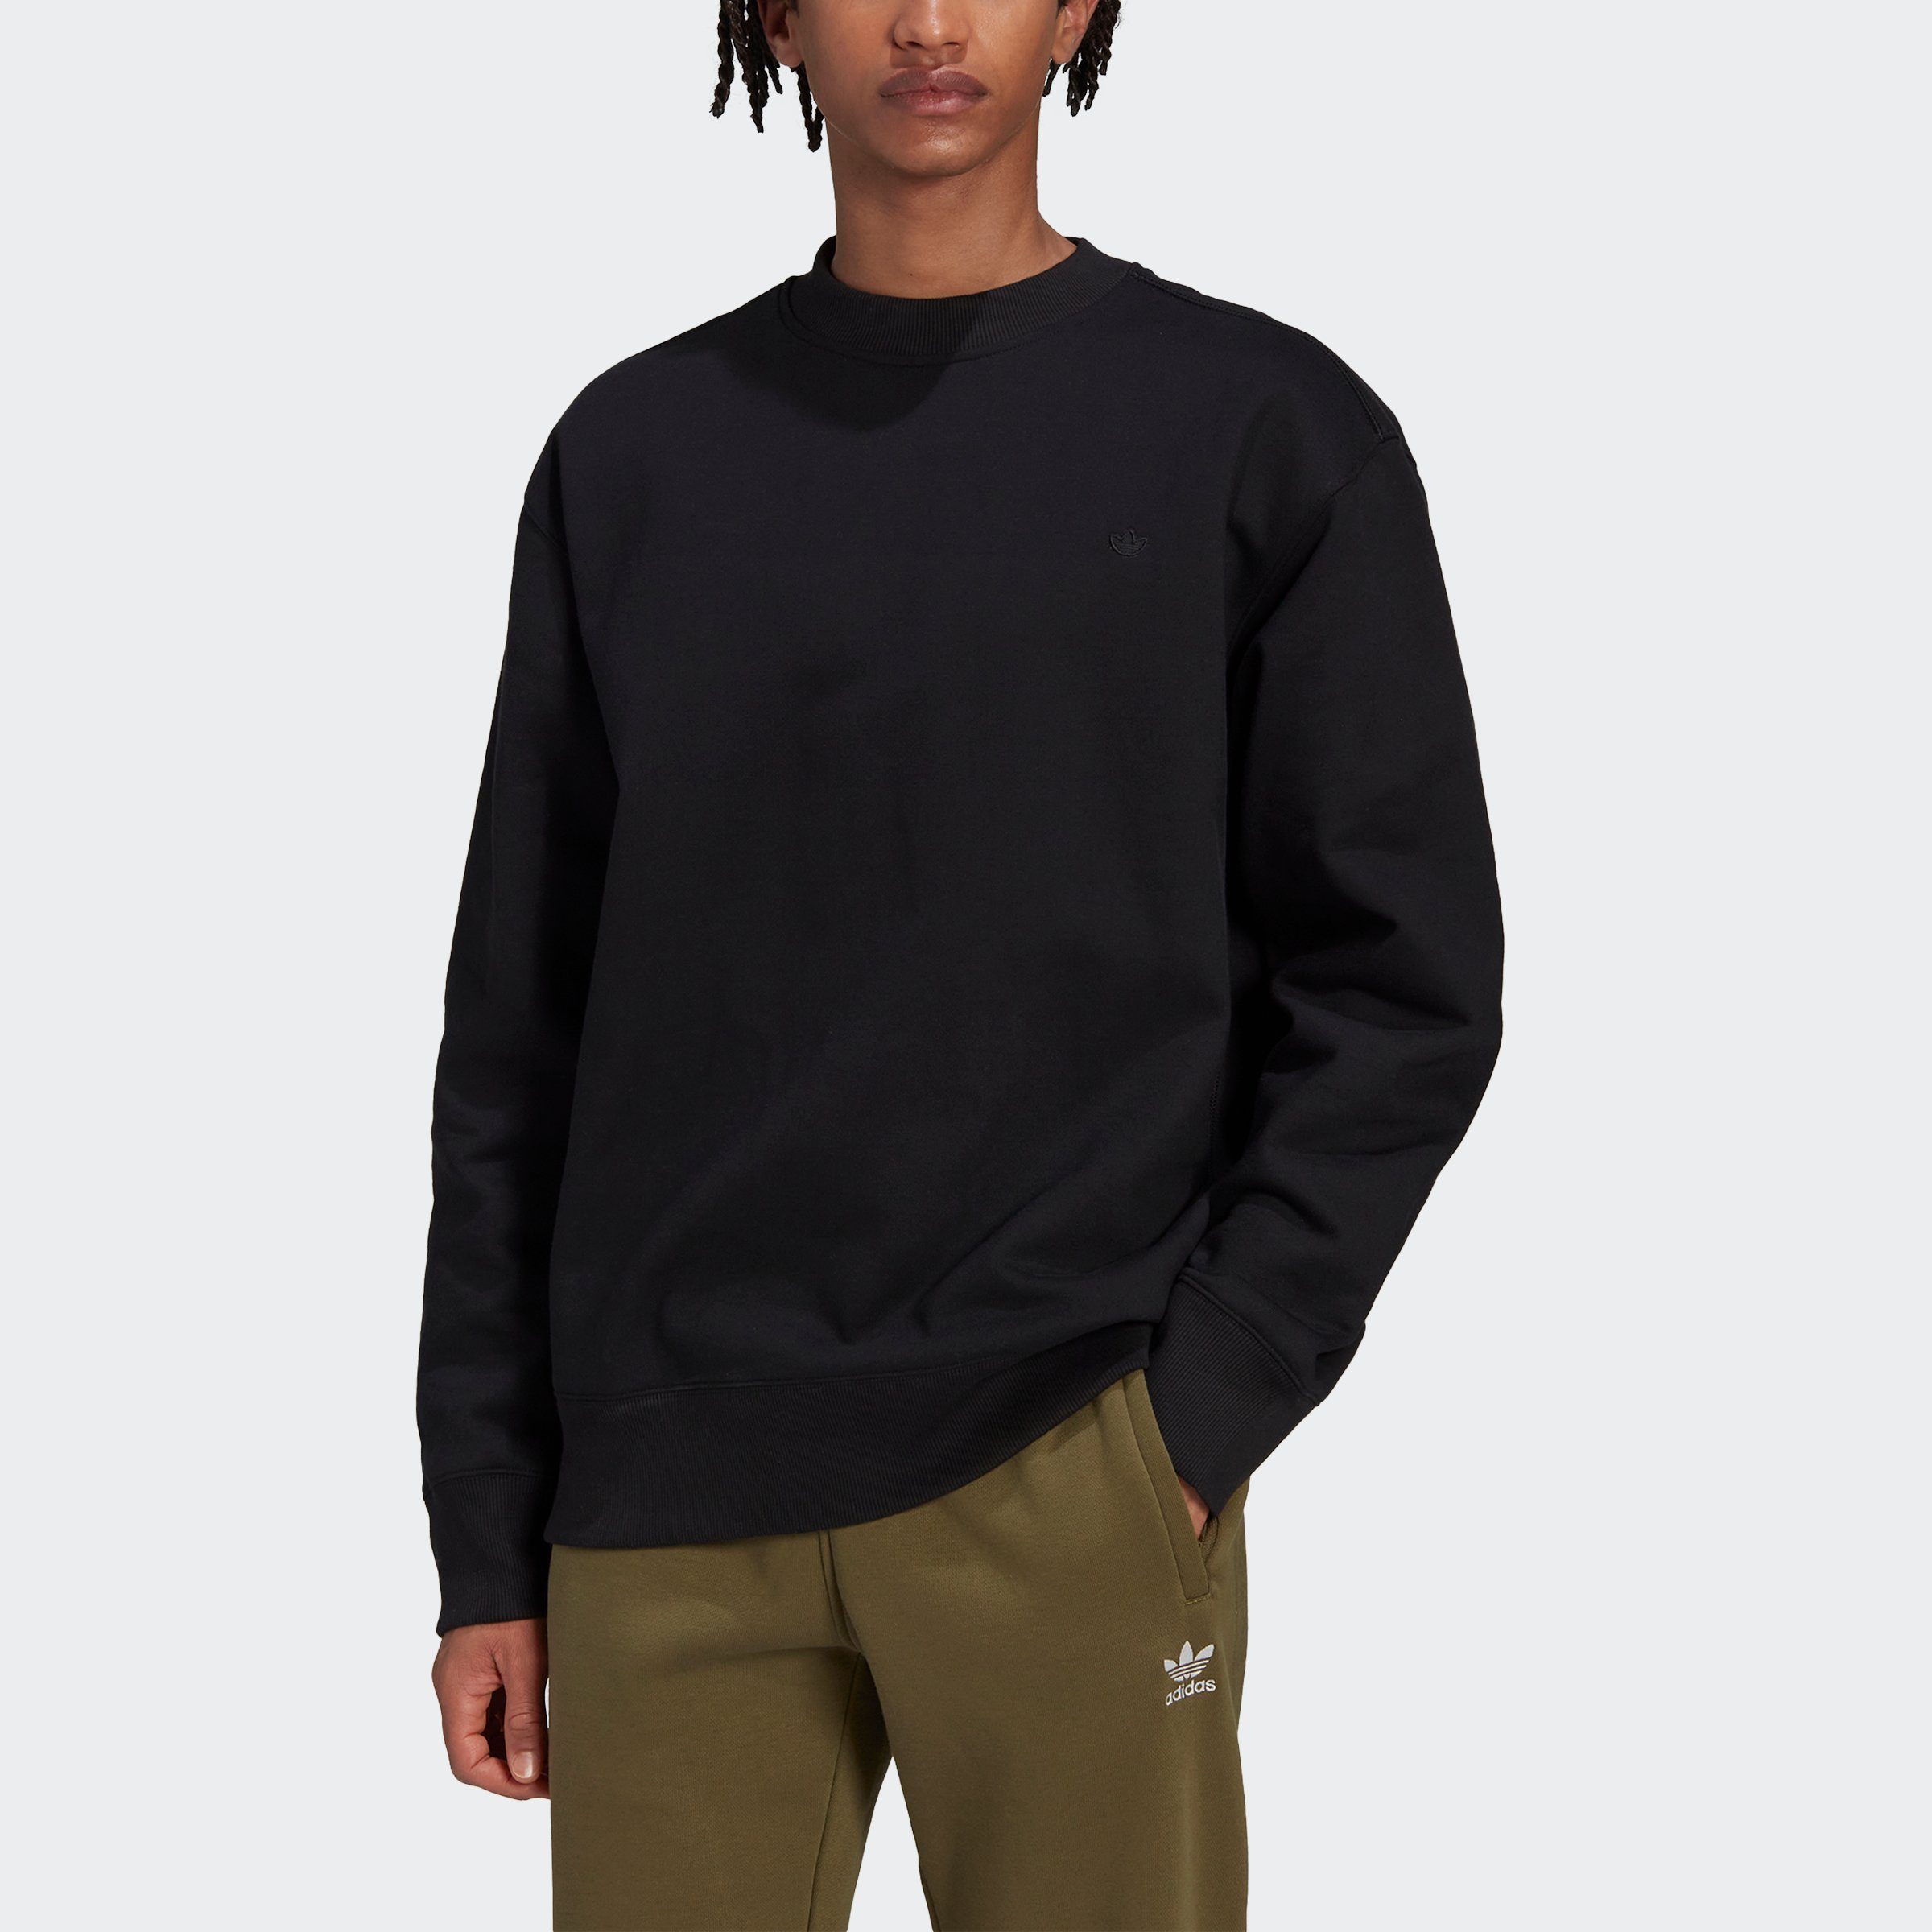 C adidas Originals Sweatshirt black Crew